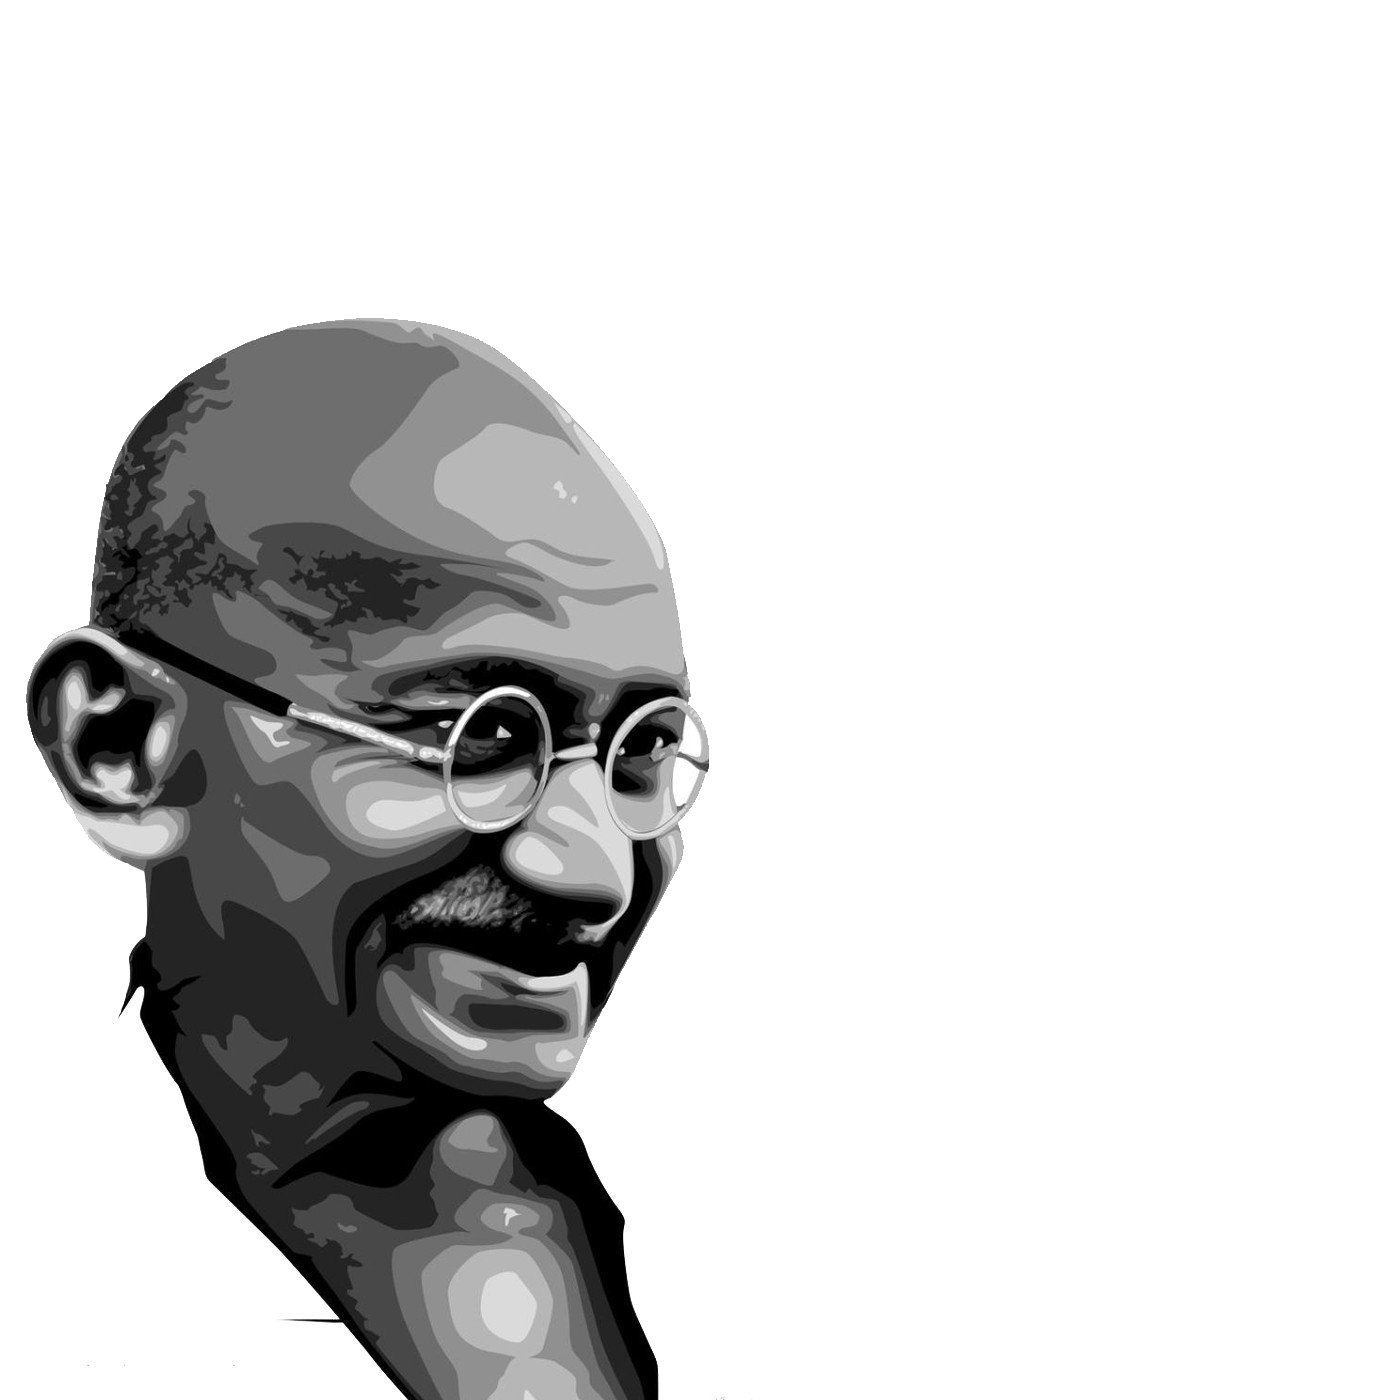 Mahatma Gandhi PNG